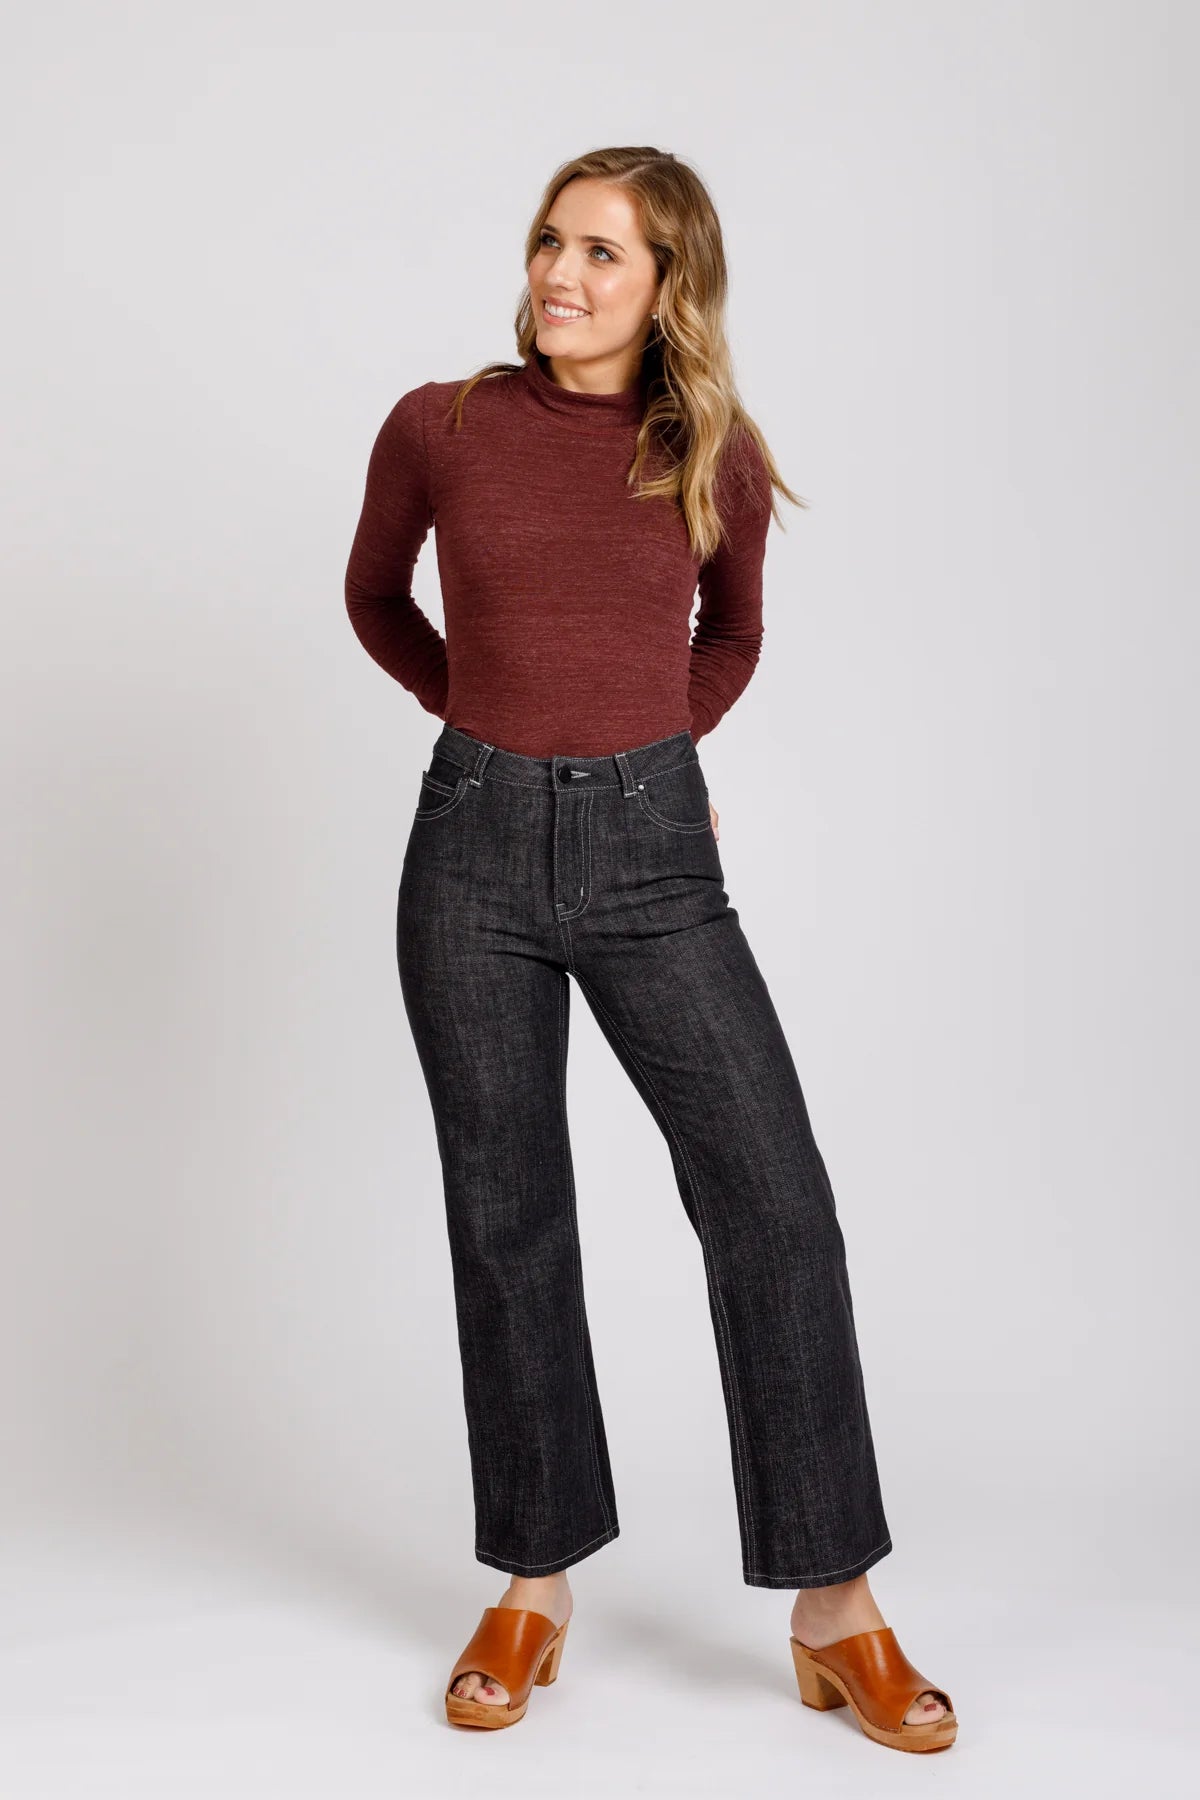 Megan Nielsen Ash Jeans